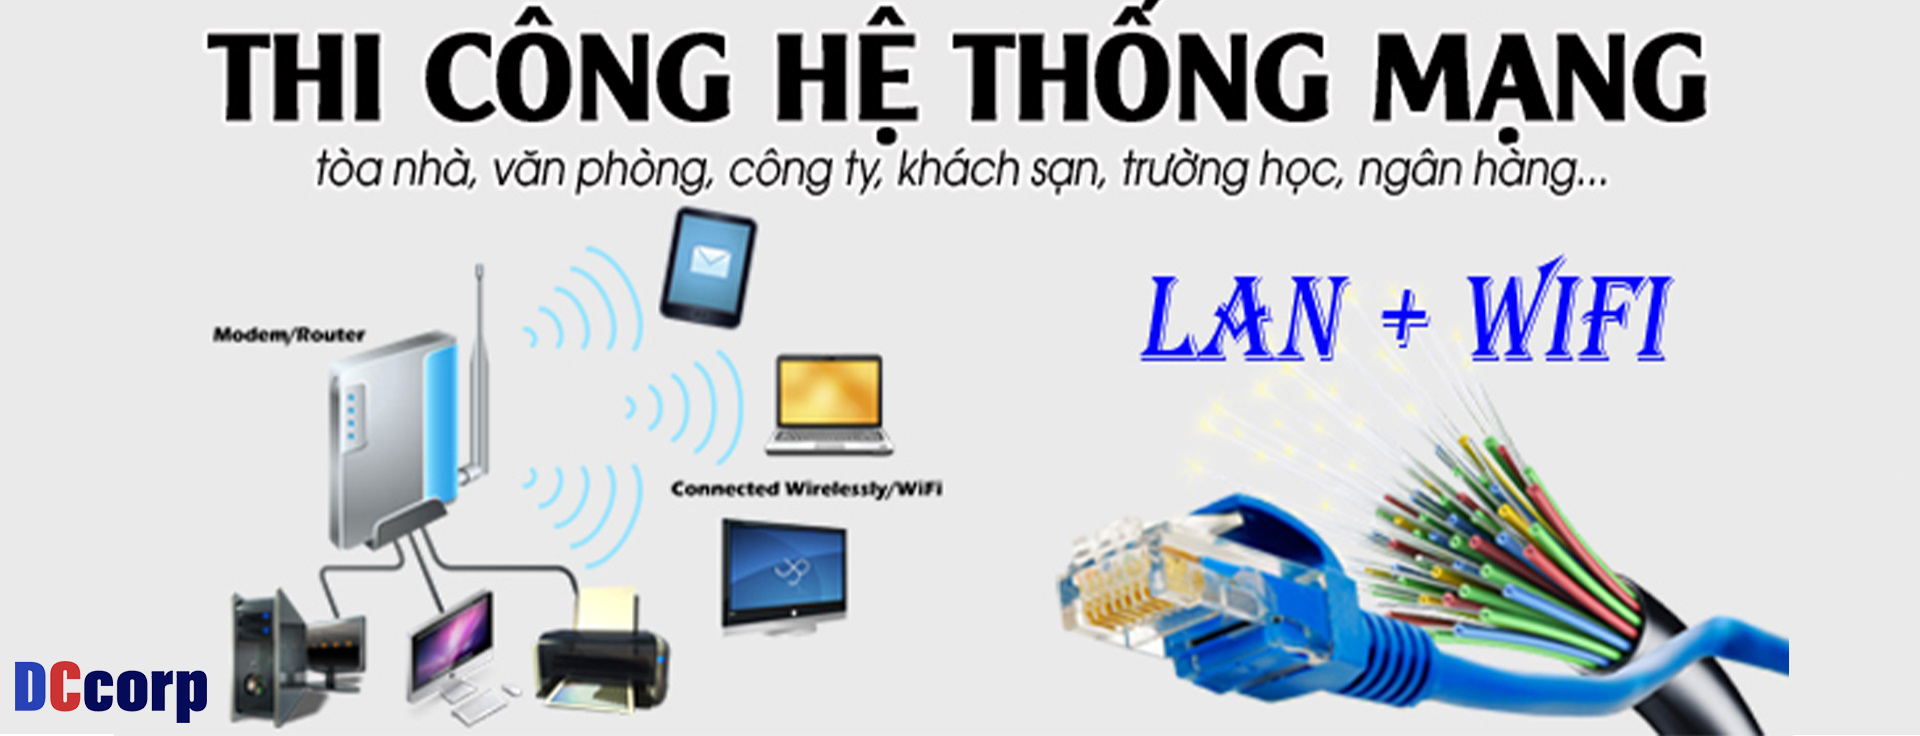 thi cong he thong mang